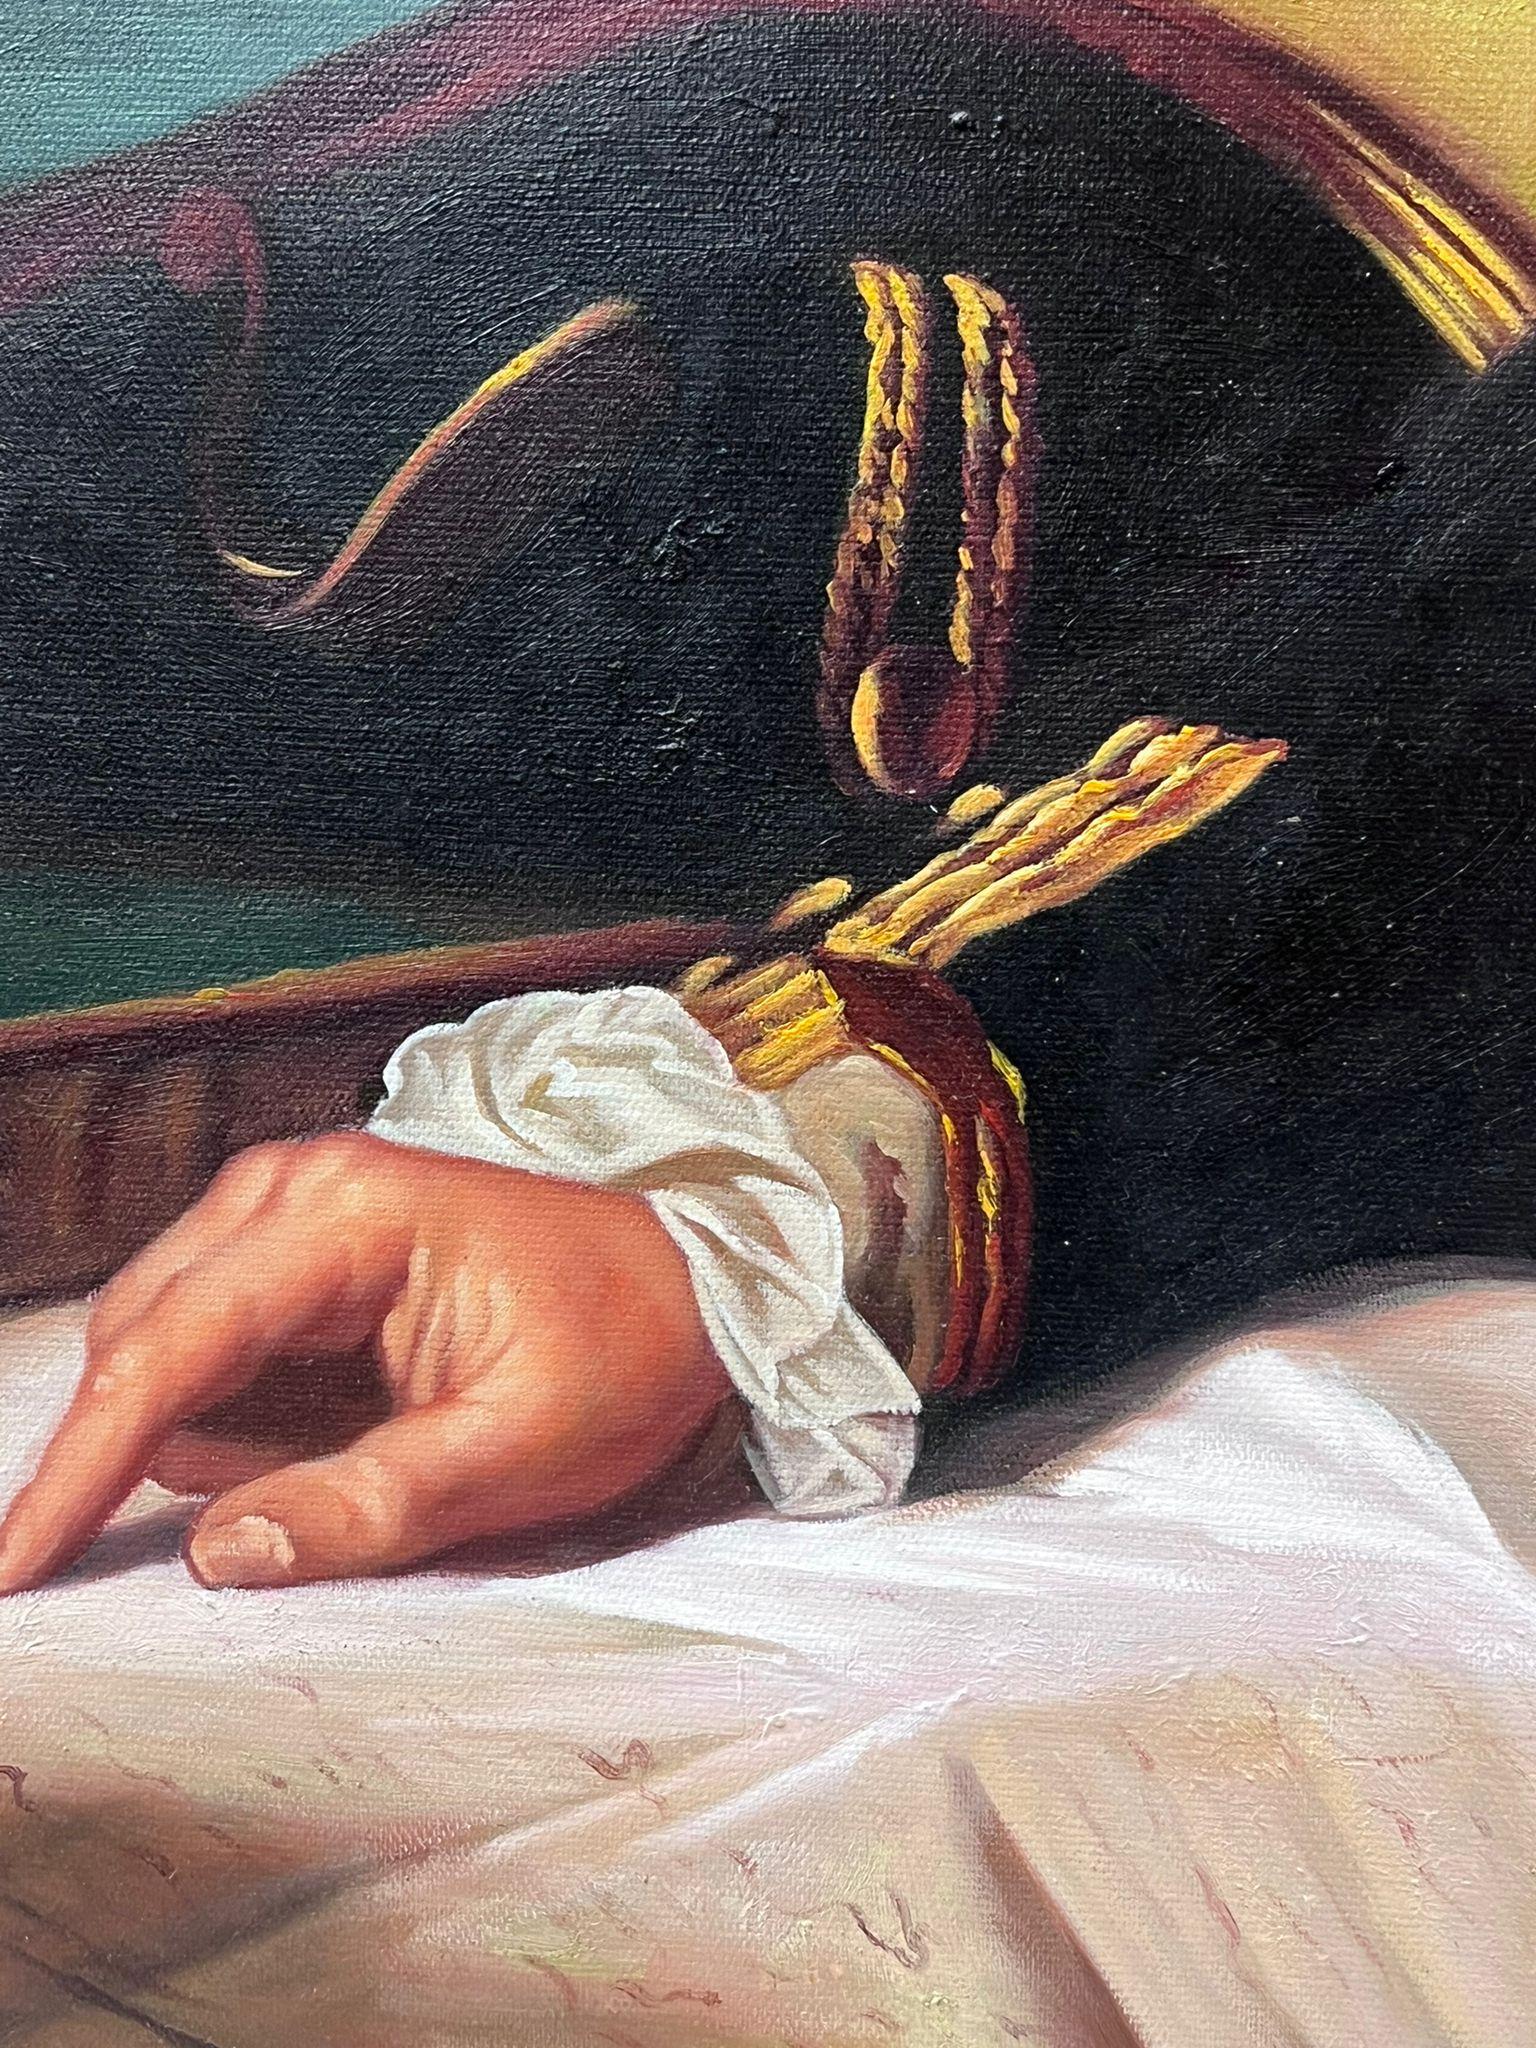 Captain James Cook Portrait Large Oil Painting on Canvas For Sale 3